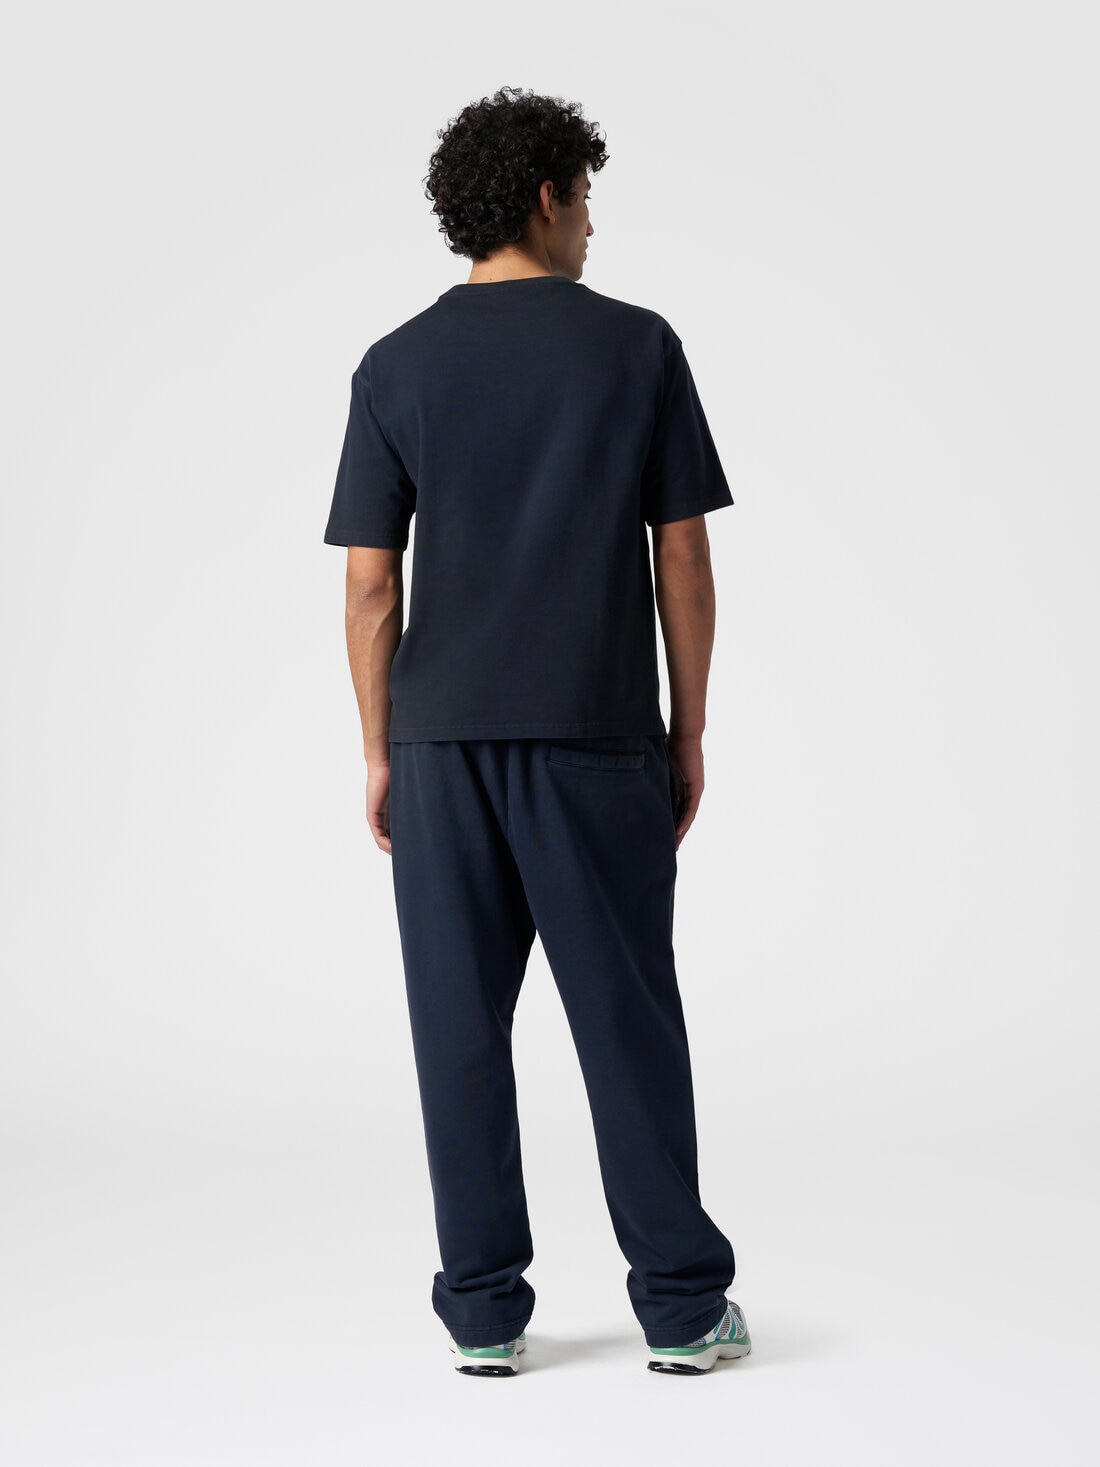 Camiseta de cuello redondo de algodón con logotipo, Azul Marino  - TS24SL00BJ00GYS72EU - 2